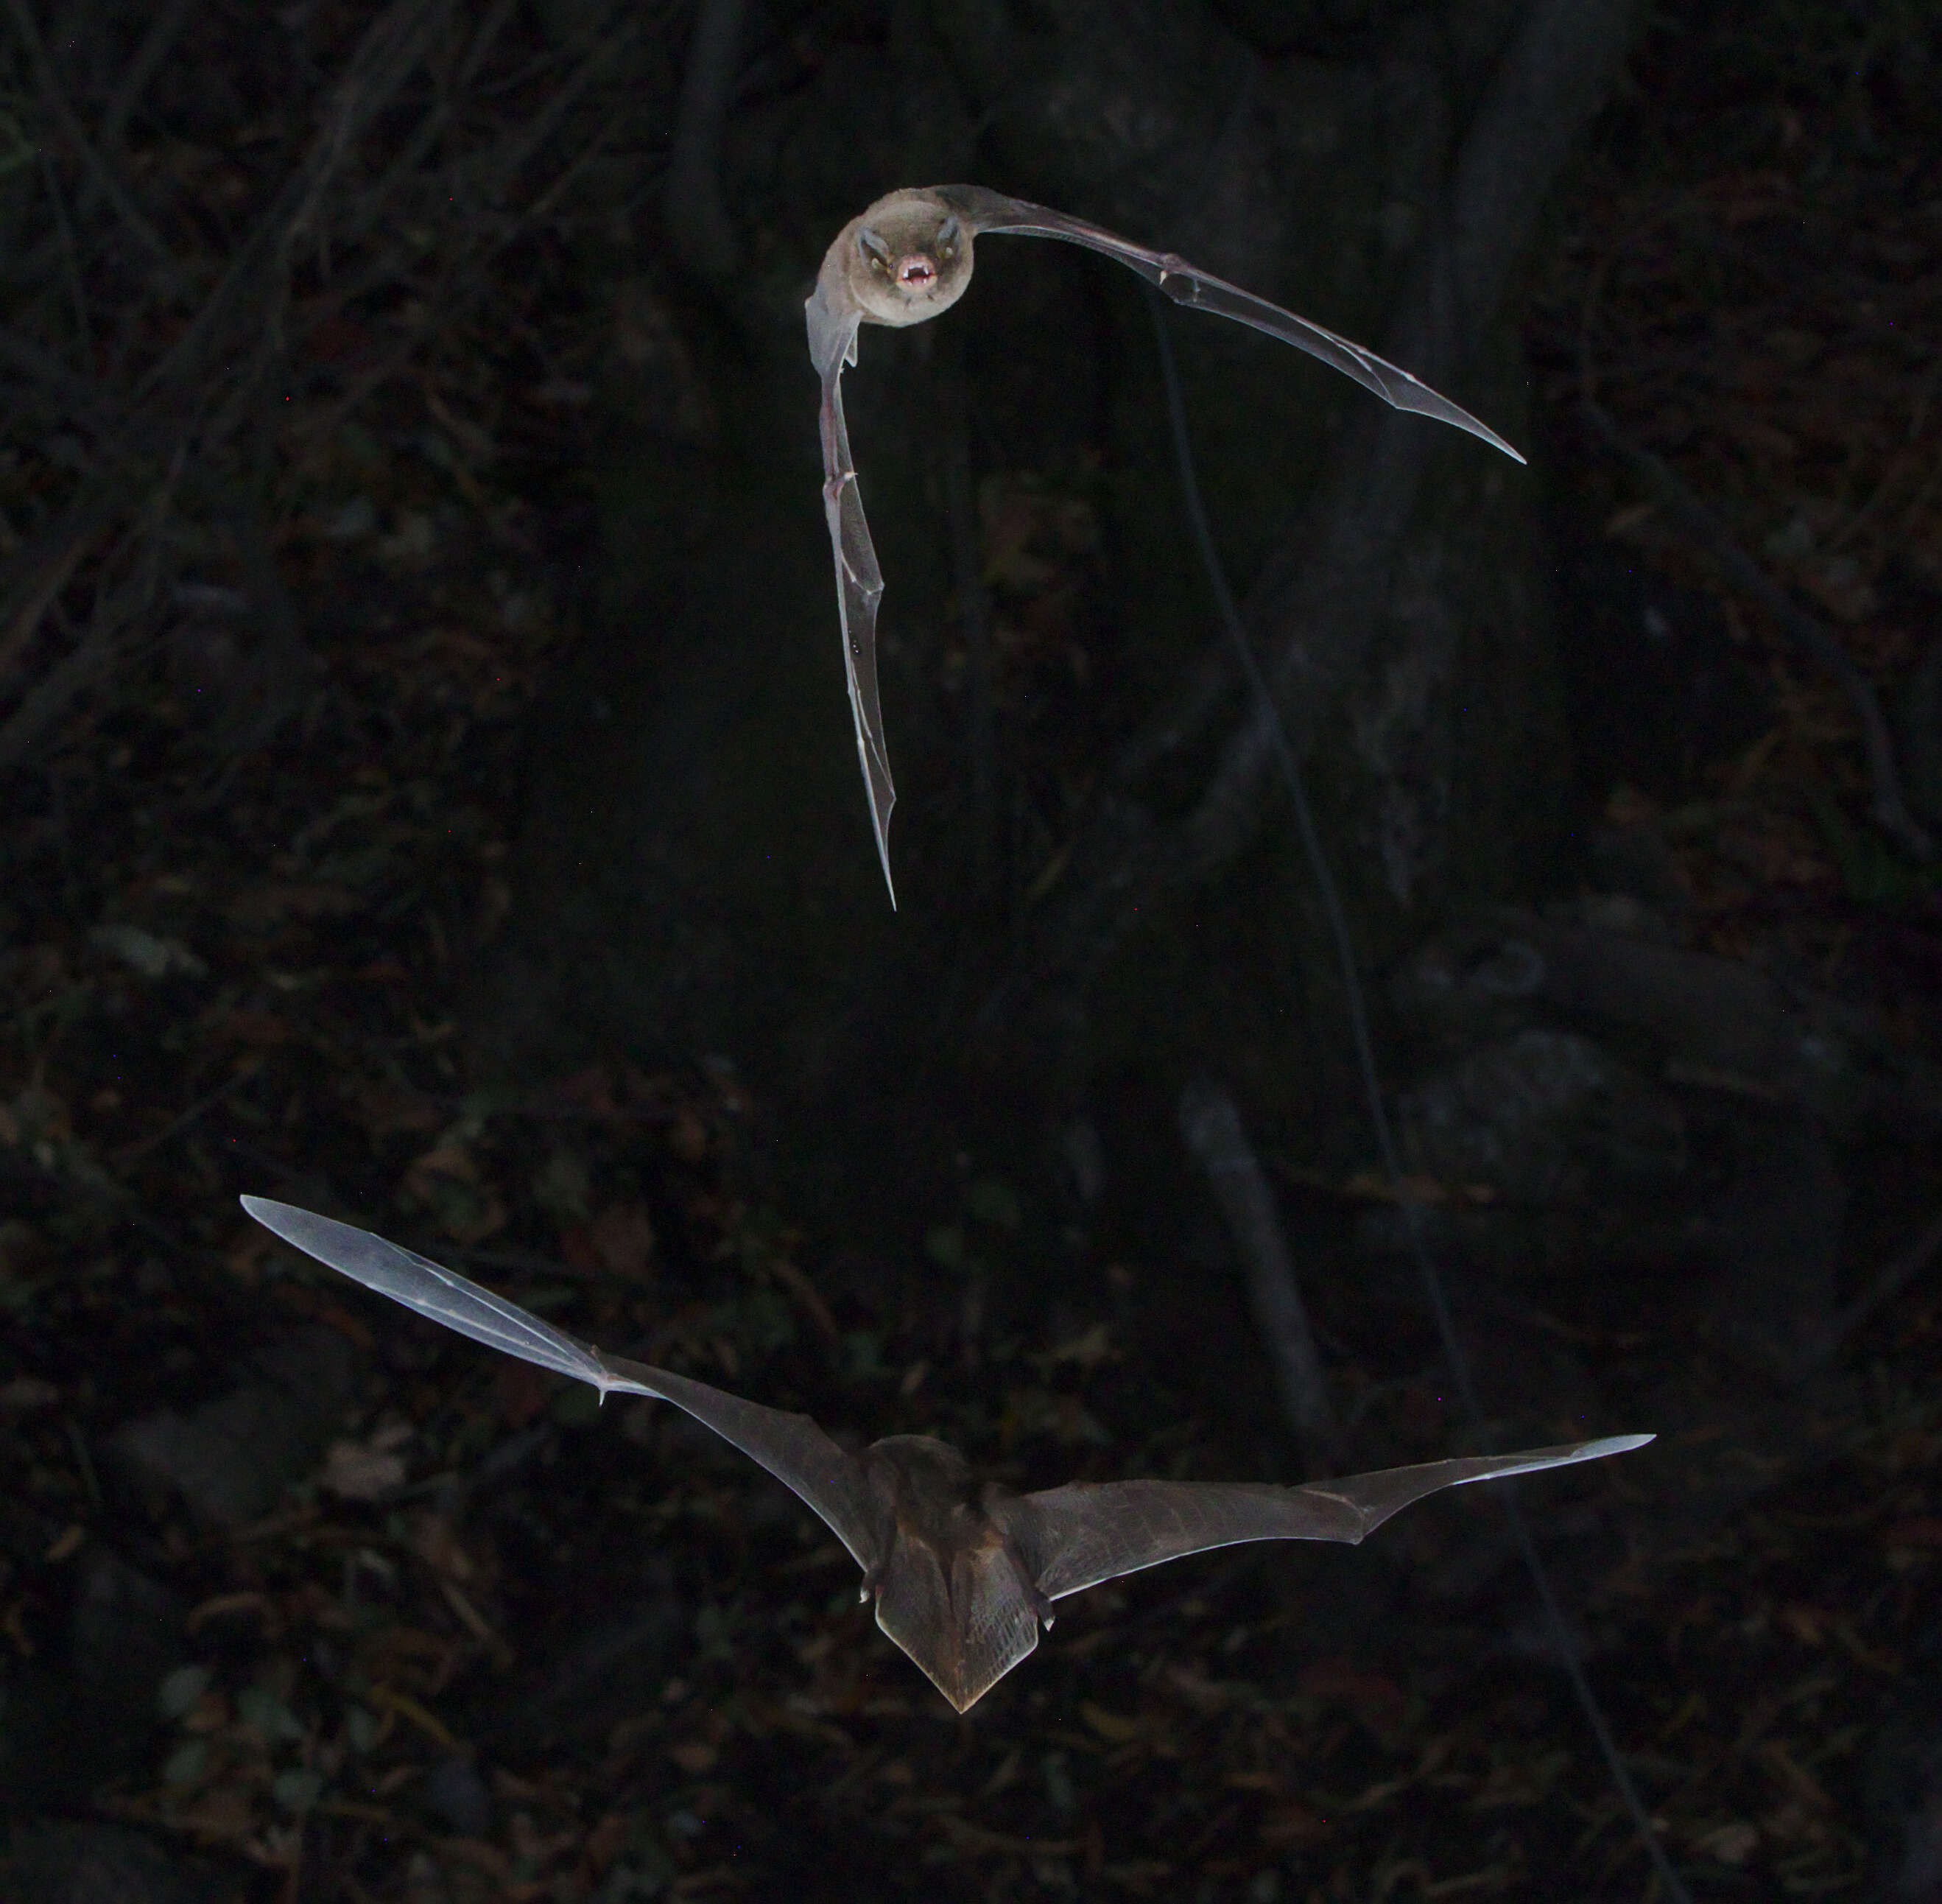 Image of Natal Long-fingered Bat